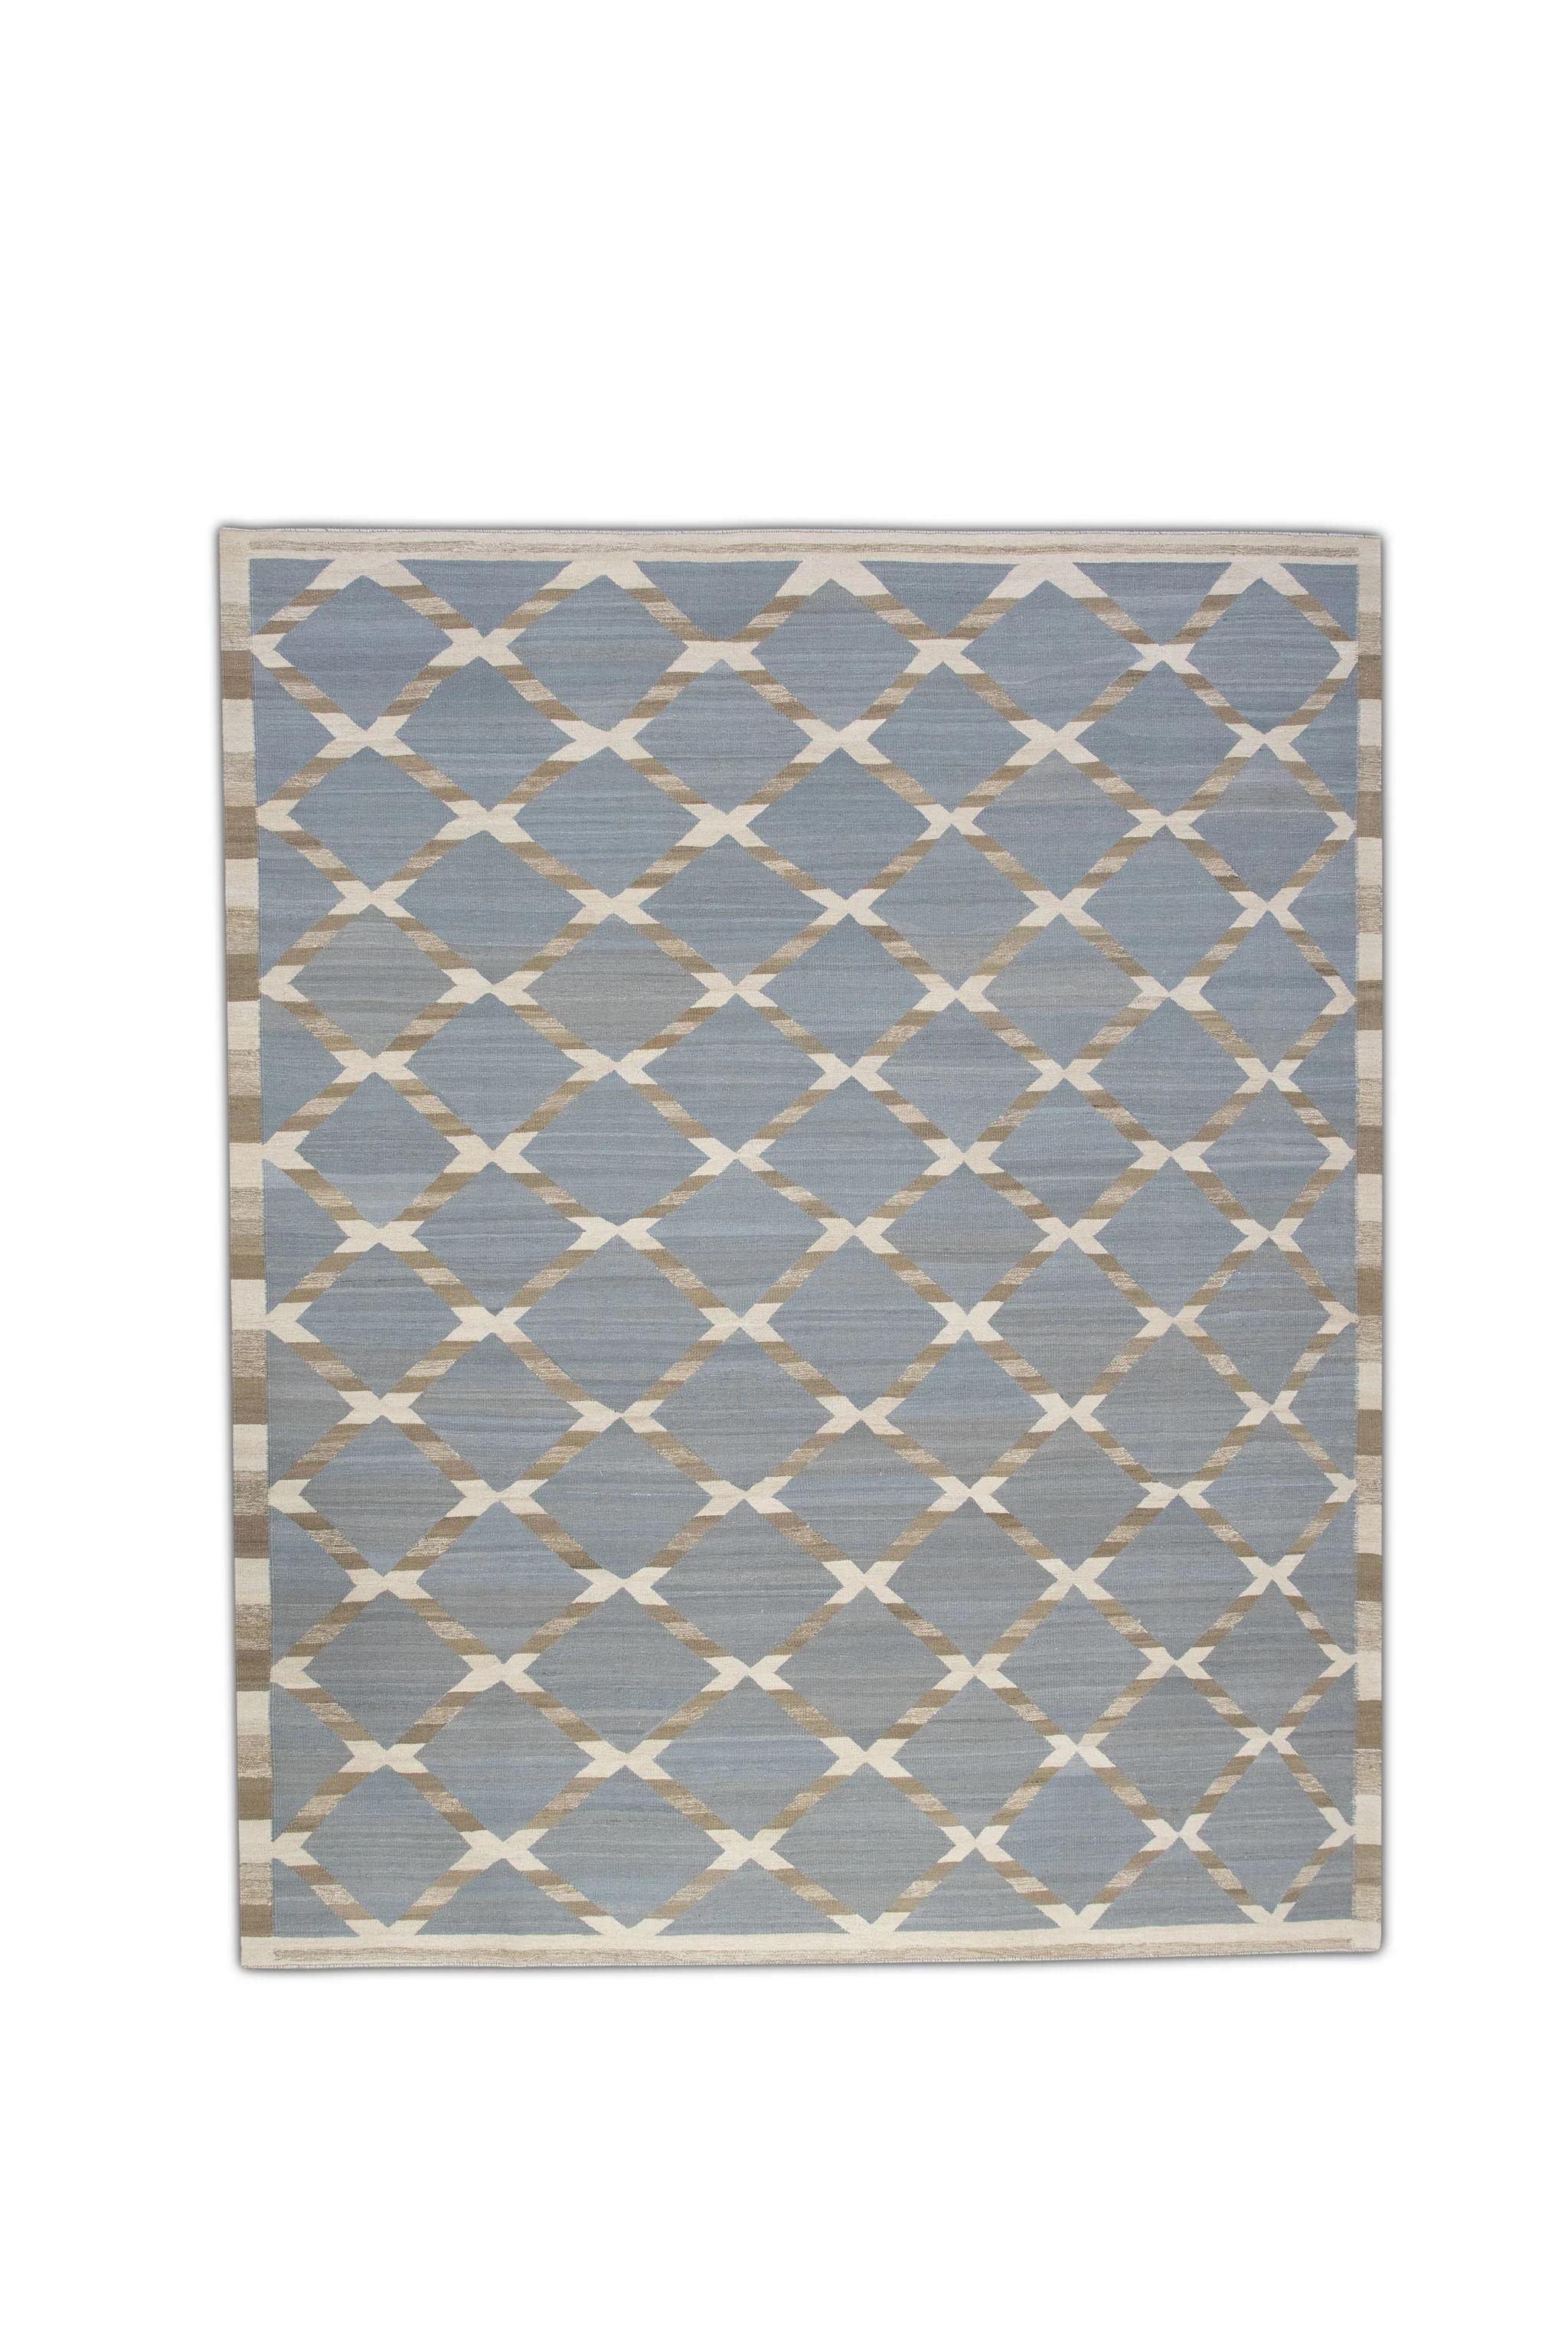 Blue & Brown Geometric Pattern Flatweave Handmade Wool Rug 9'5